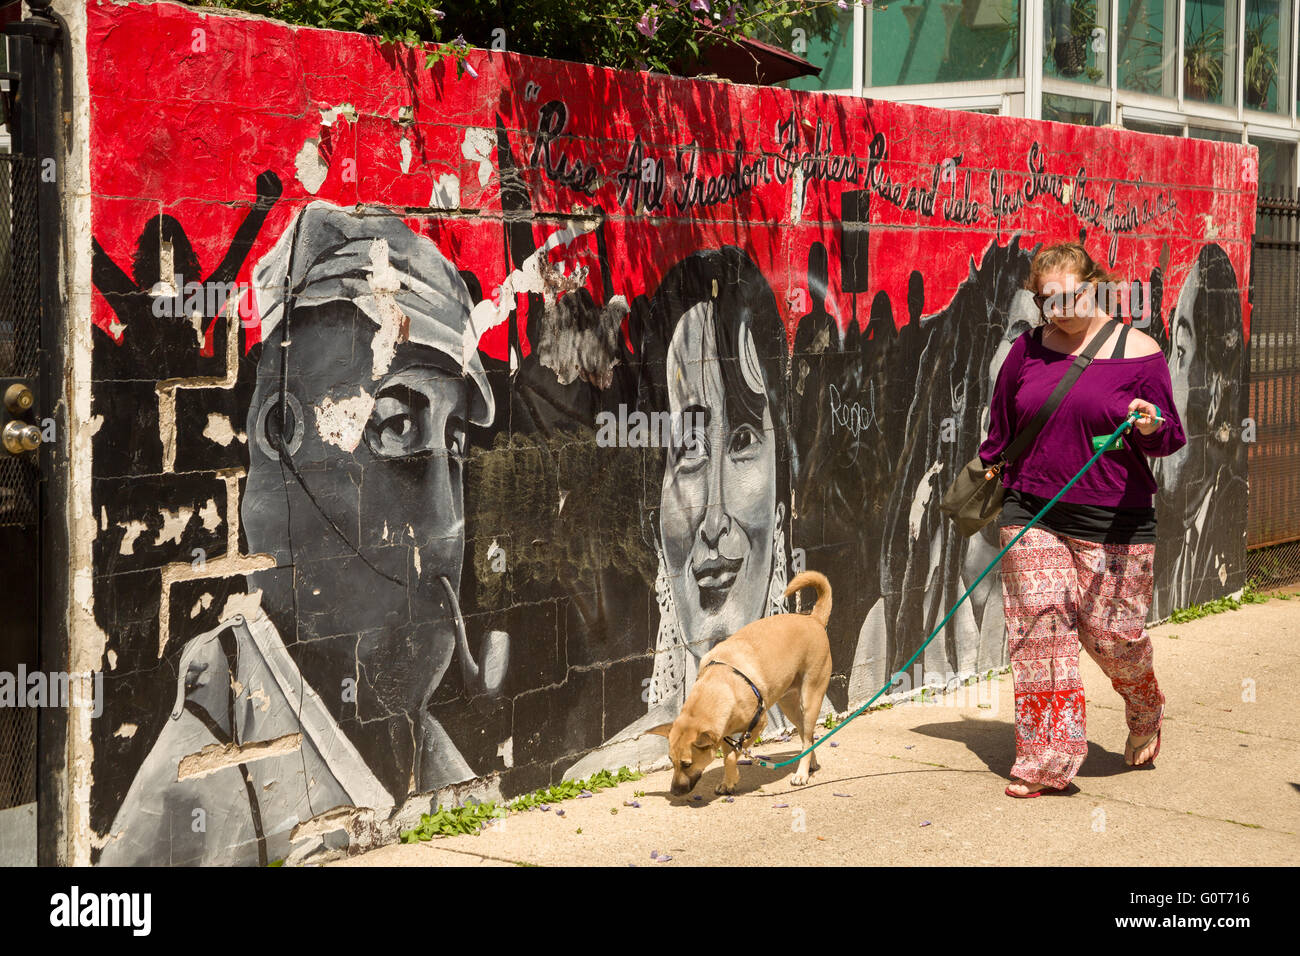 Eine Frau geht ihren Hund vorbei das Subcomandante Marcos und Benazir Bhutto steigen alle Freiheitskämpfer Straße Wandbild an einer Wand in dem trendigen Wicker Park Viertel im Westen der Stadt-Gemeinde in Chicago, Illinois, USA Stockfoto